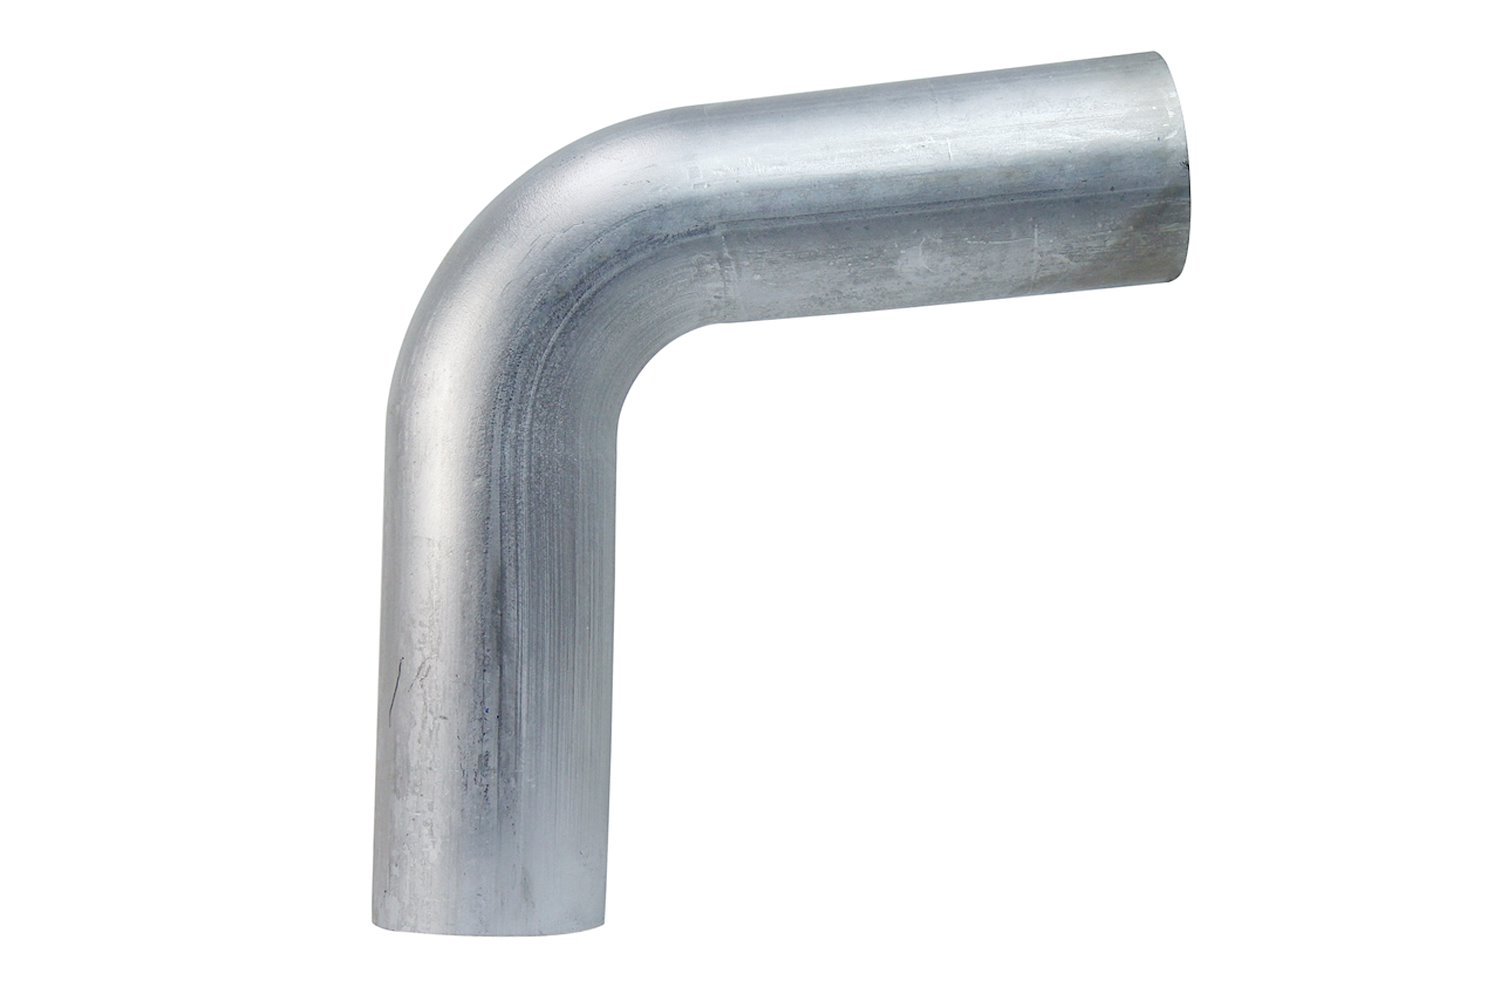 AT80-275-CLR-275 Aluminum Elbow Tube, 6061 Aluminum, 80-Degree Bend Elbow Tubing, 2-3/4 in. OD, Tight Radius, 2-3/4 in. CLR